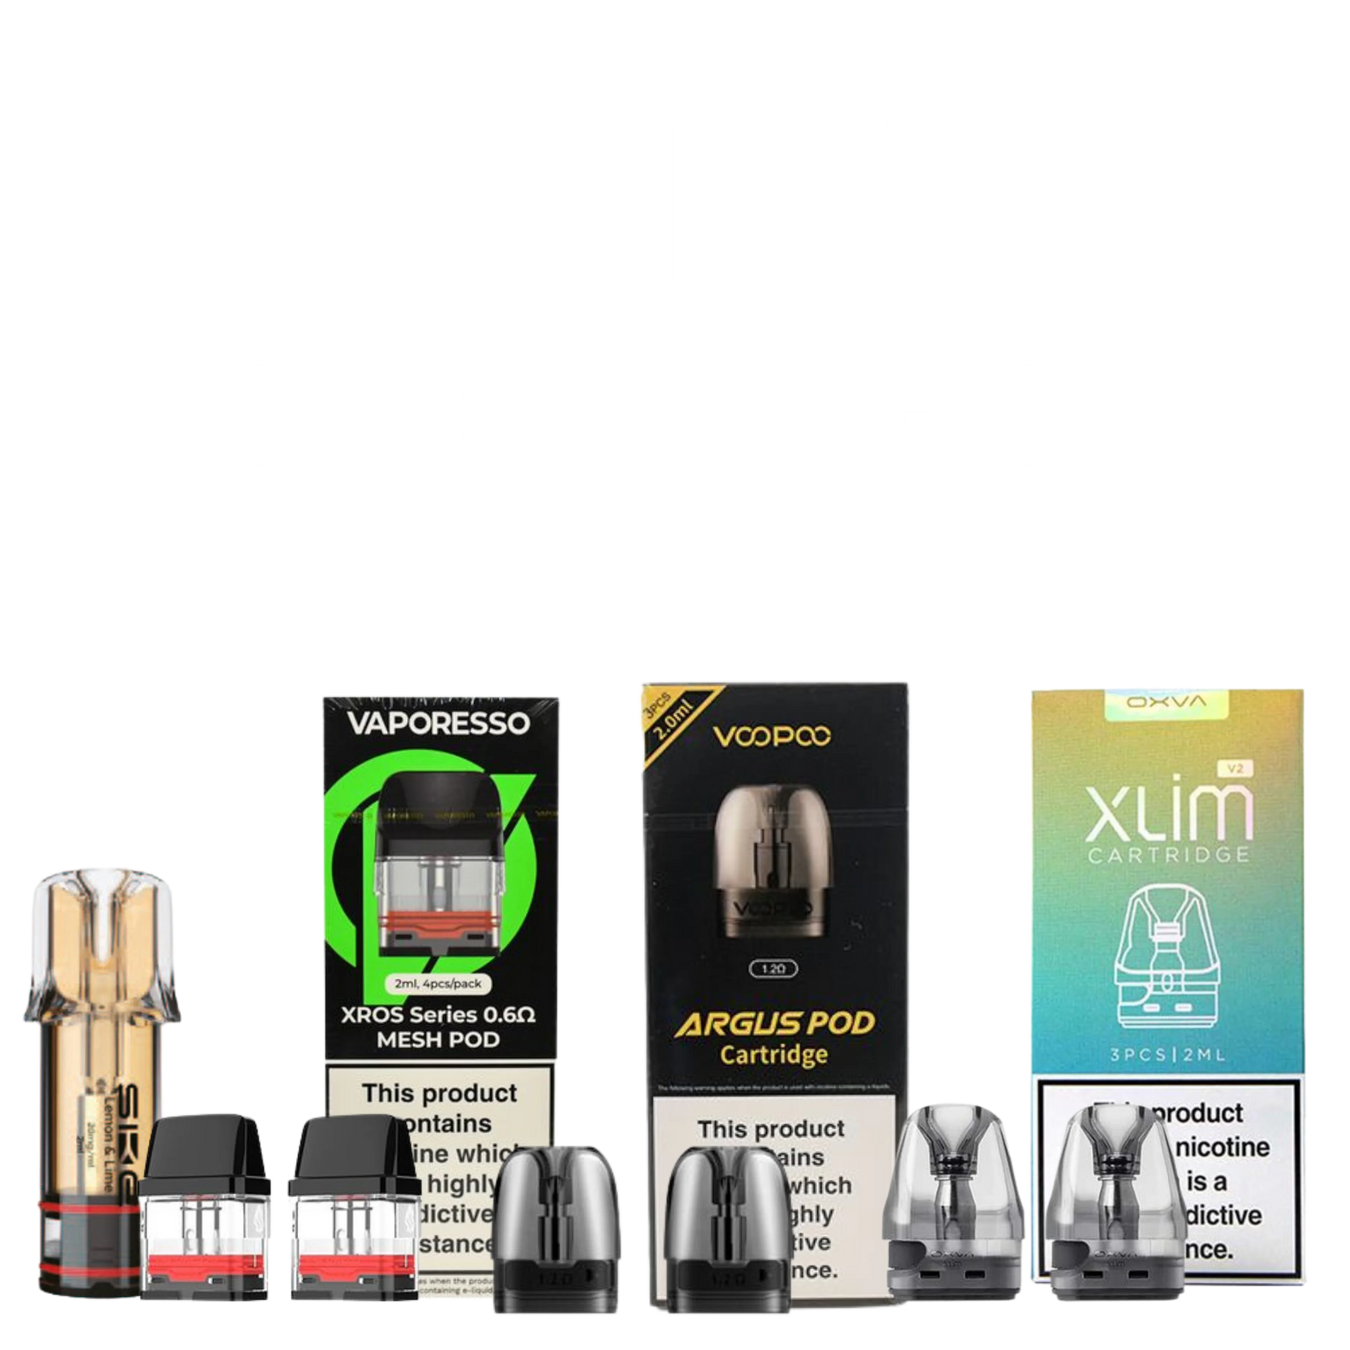 Pods & Cartridges